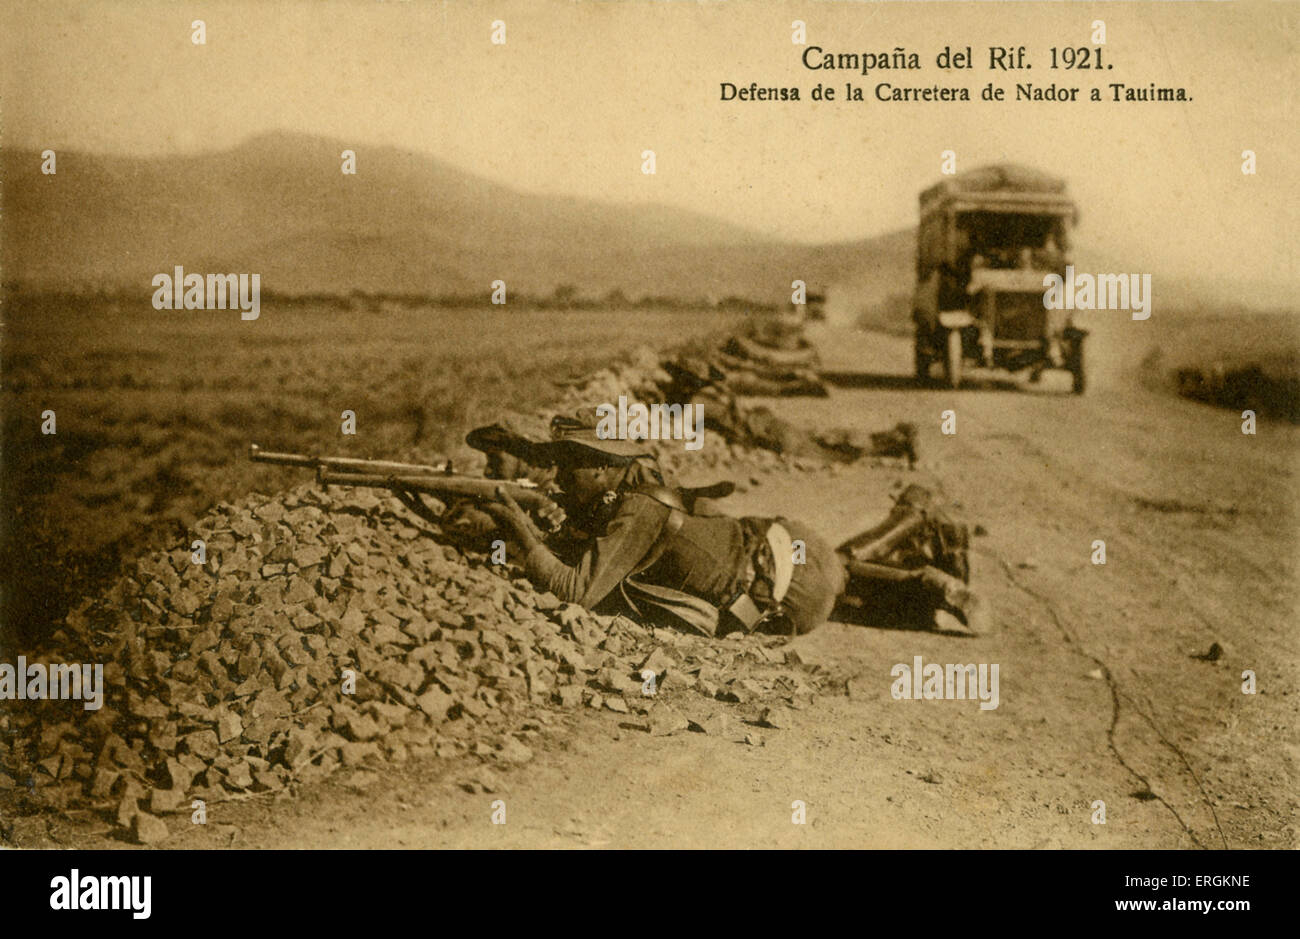 Spanische Soldaten verteidigen eine Straße außerhalb Tauima, Marokko, 1921, als Teil einer Aktion im Rif Krieg (1920-6). Stockfoto